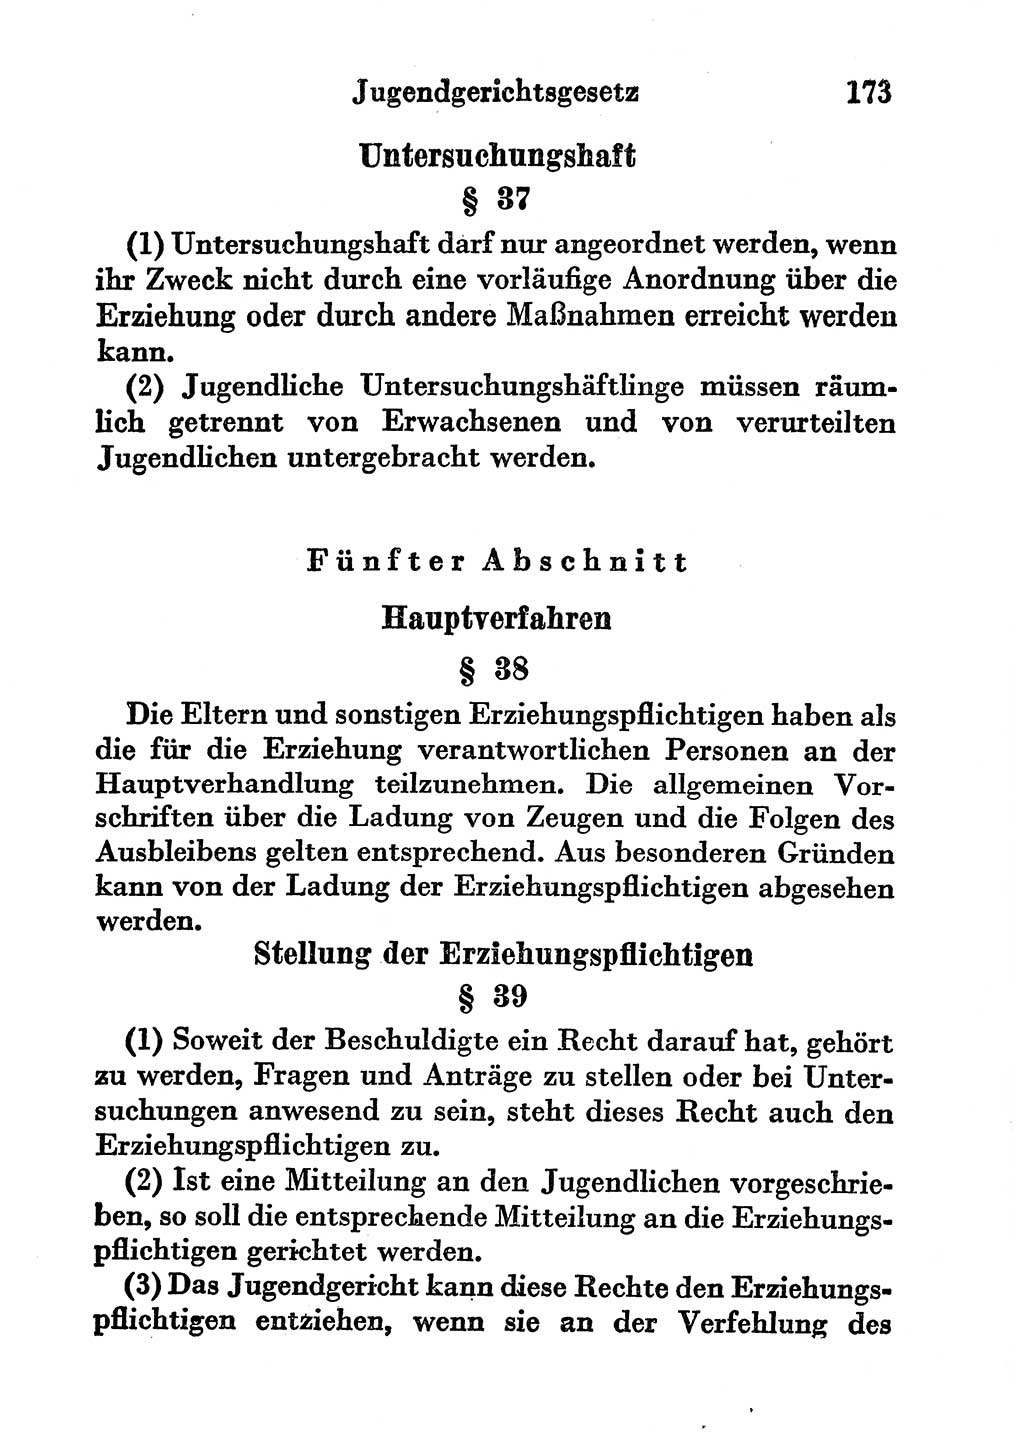 Strafgesetzbuch (StGB) und andere Strafgesetze [Deutsche Demokratische Republik (DDR)] 1956, Seite 173 (StGB Strafges. DDR 1956, S. 173)